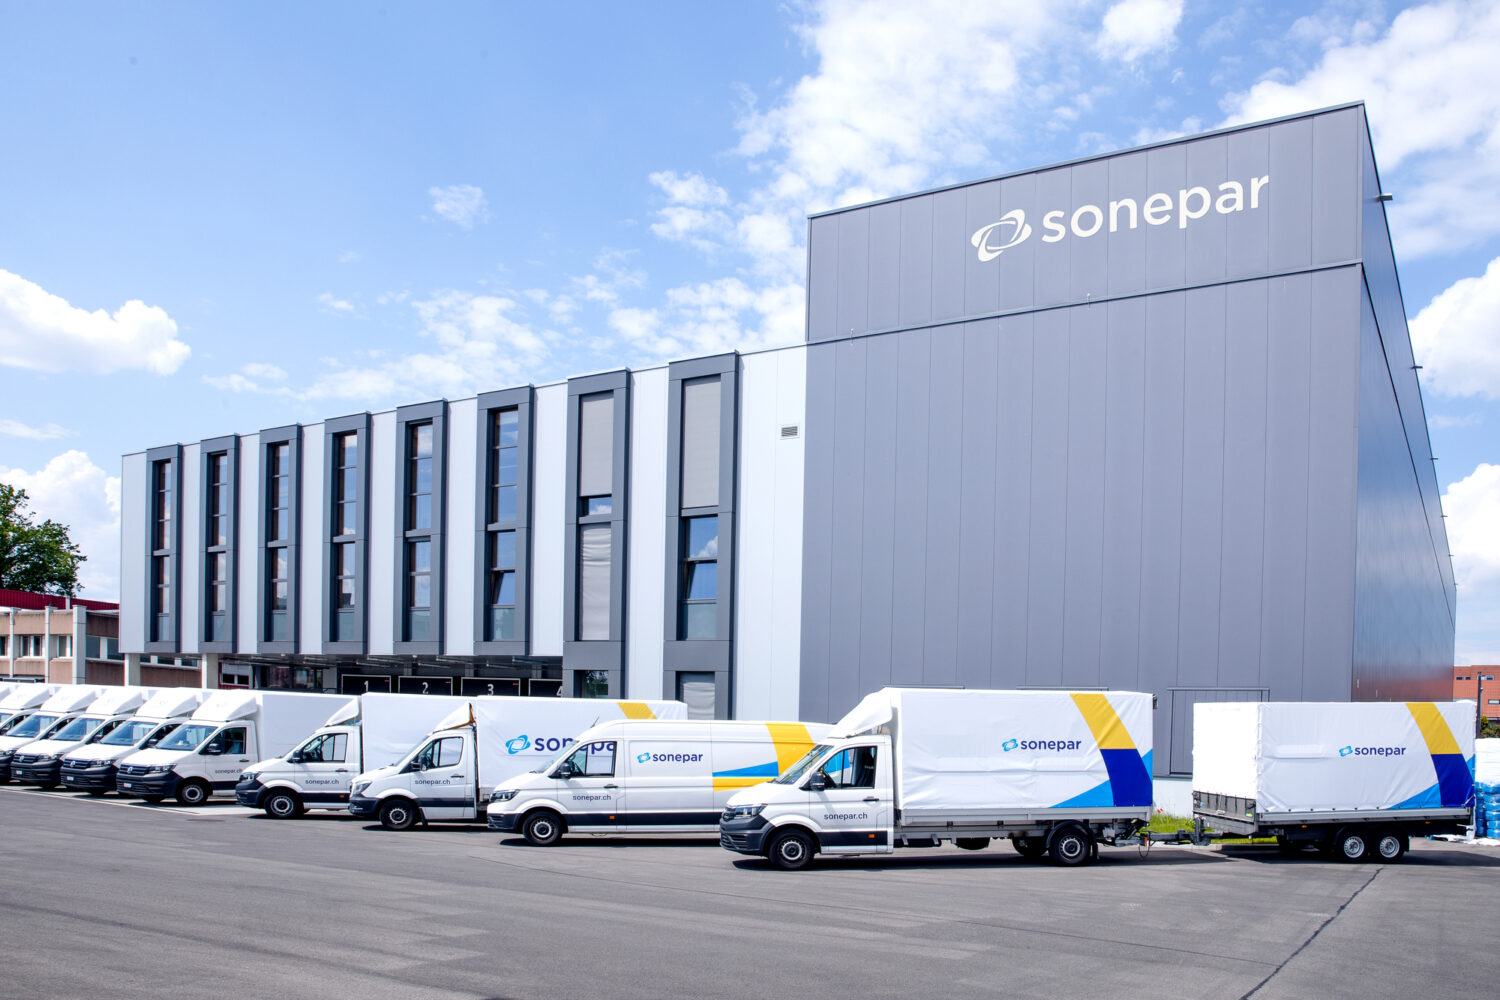 Sonepar déploie une transformation numérique majeure avec les solutions de Microsoft, Publicis Sapient et Hitachi ...